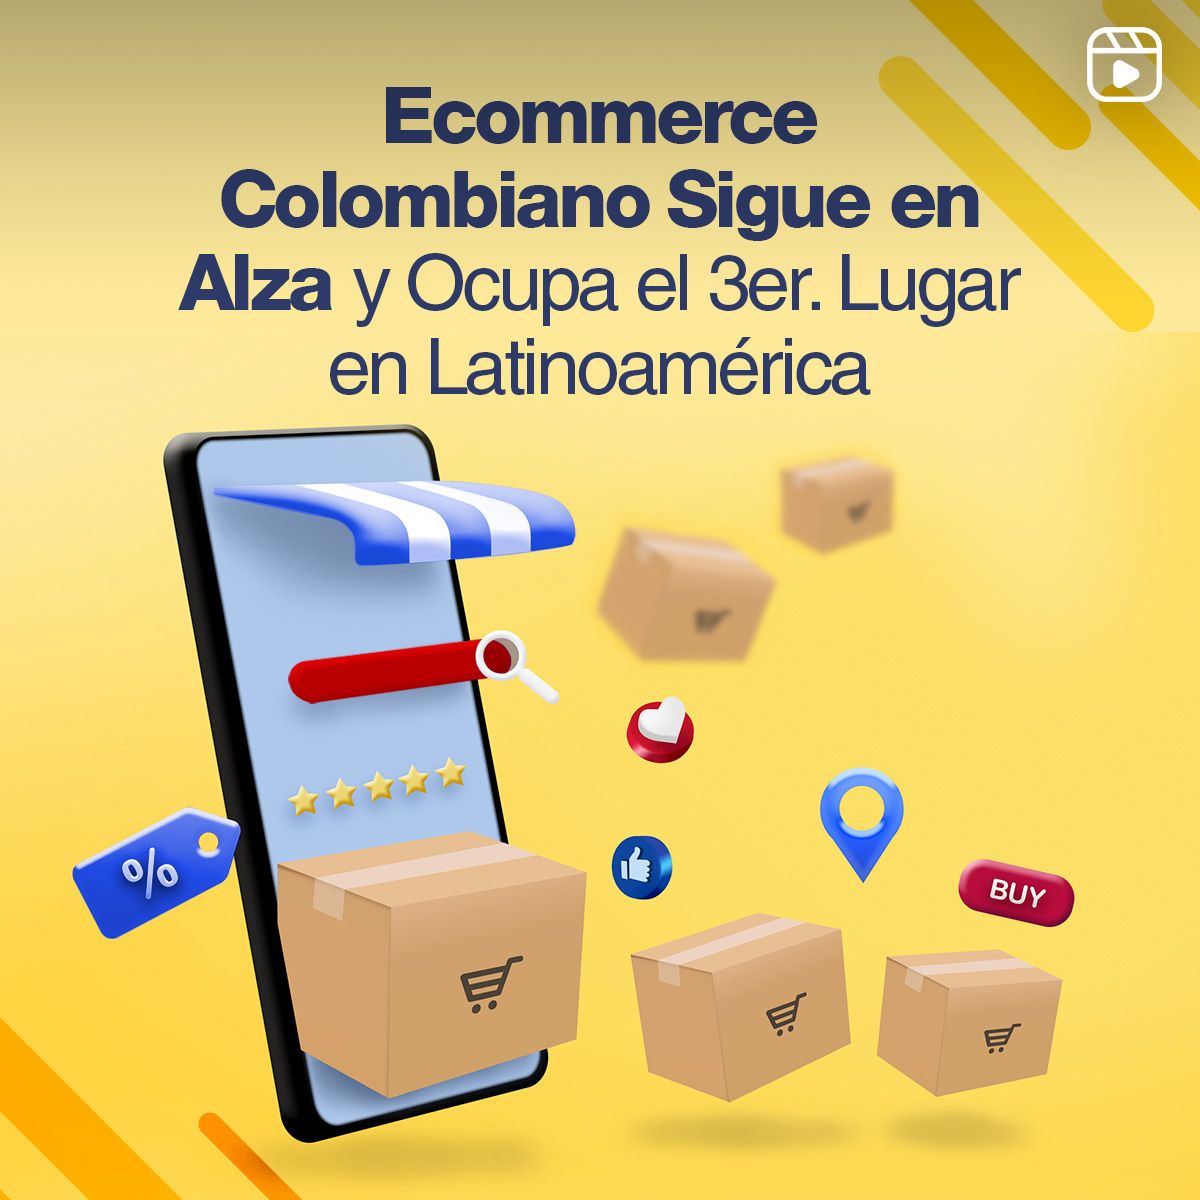 Ecommerce Colombiano Sigue en Alza y Ocupa el 3er. Lugar en Latinoamérica